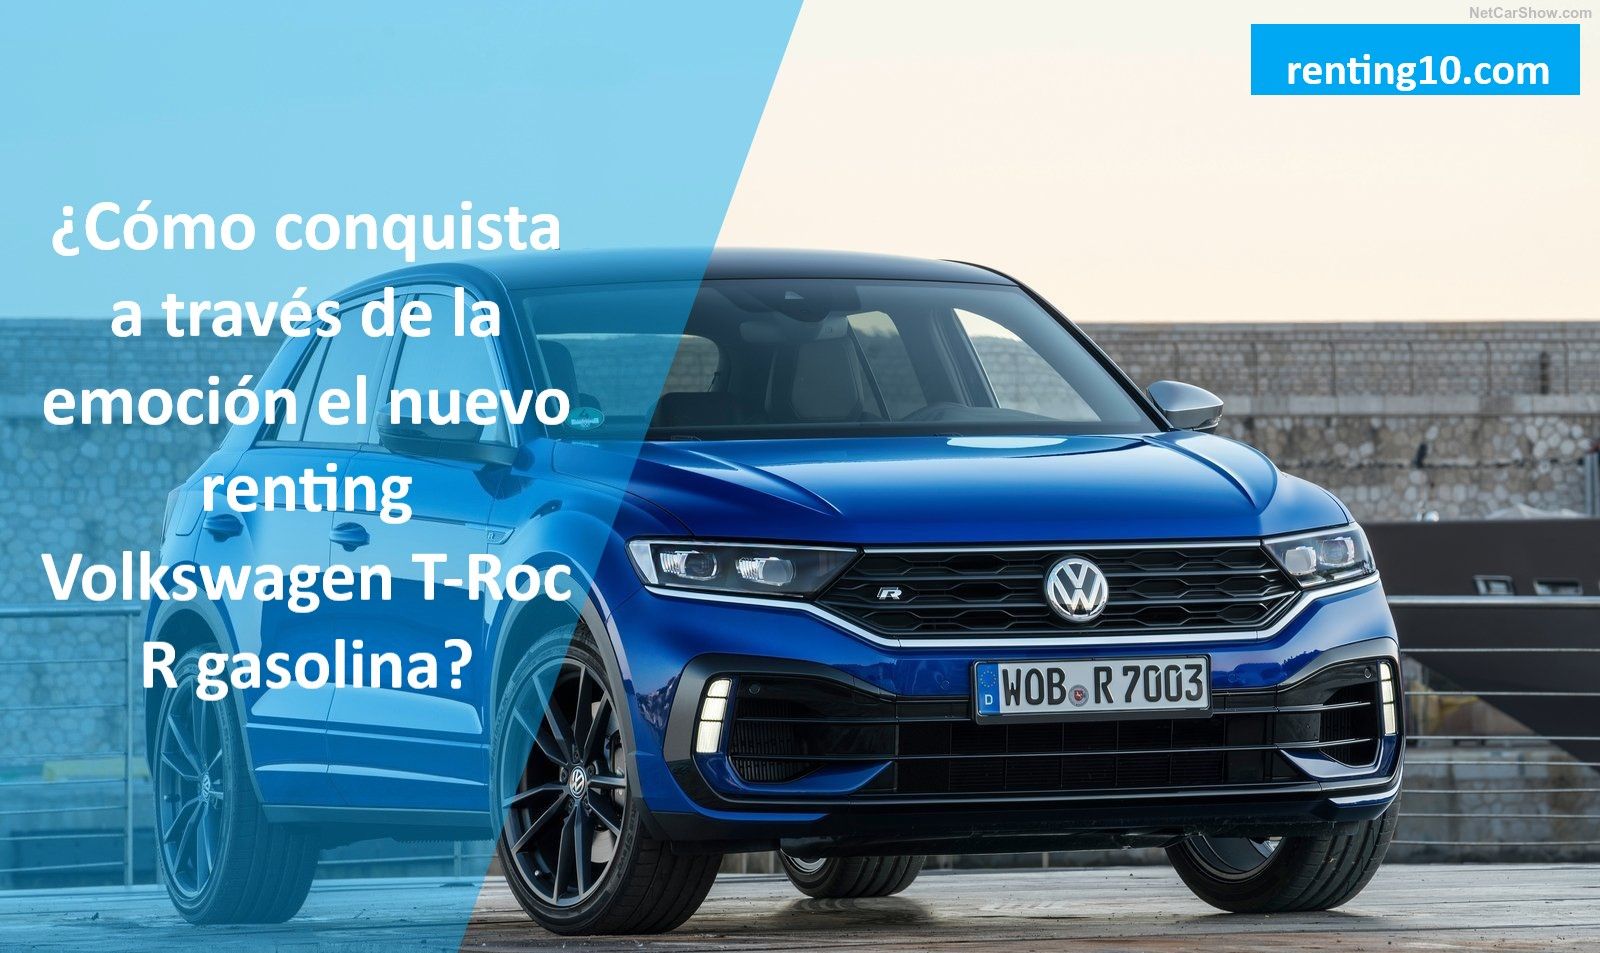 ¿Cómo conquista a través de la emoción el nuevo renting Volkswagen T-Roc R gasolina?